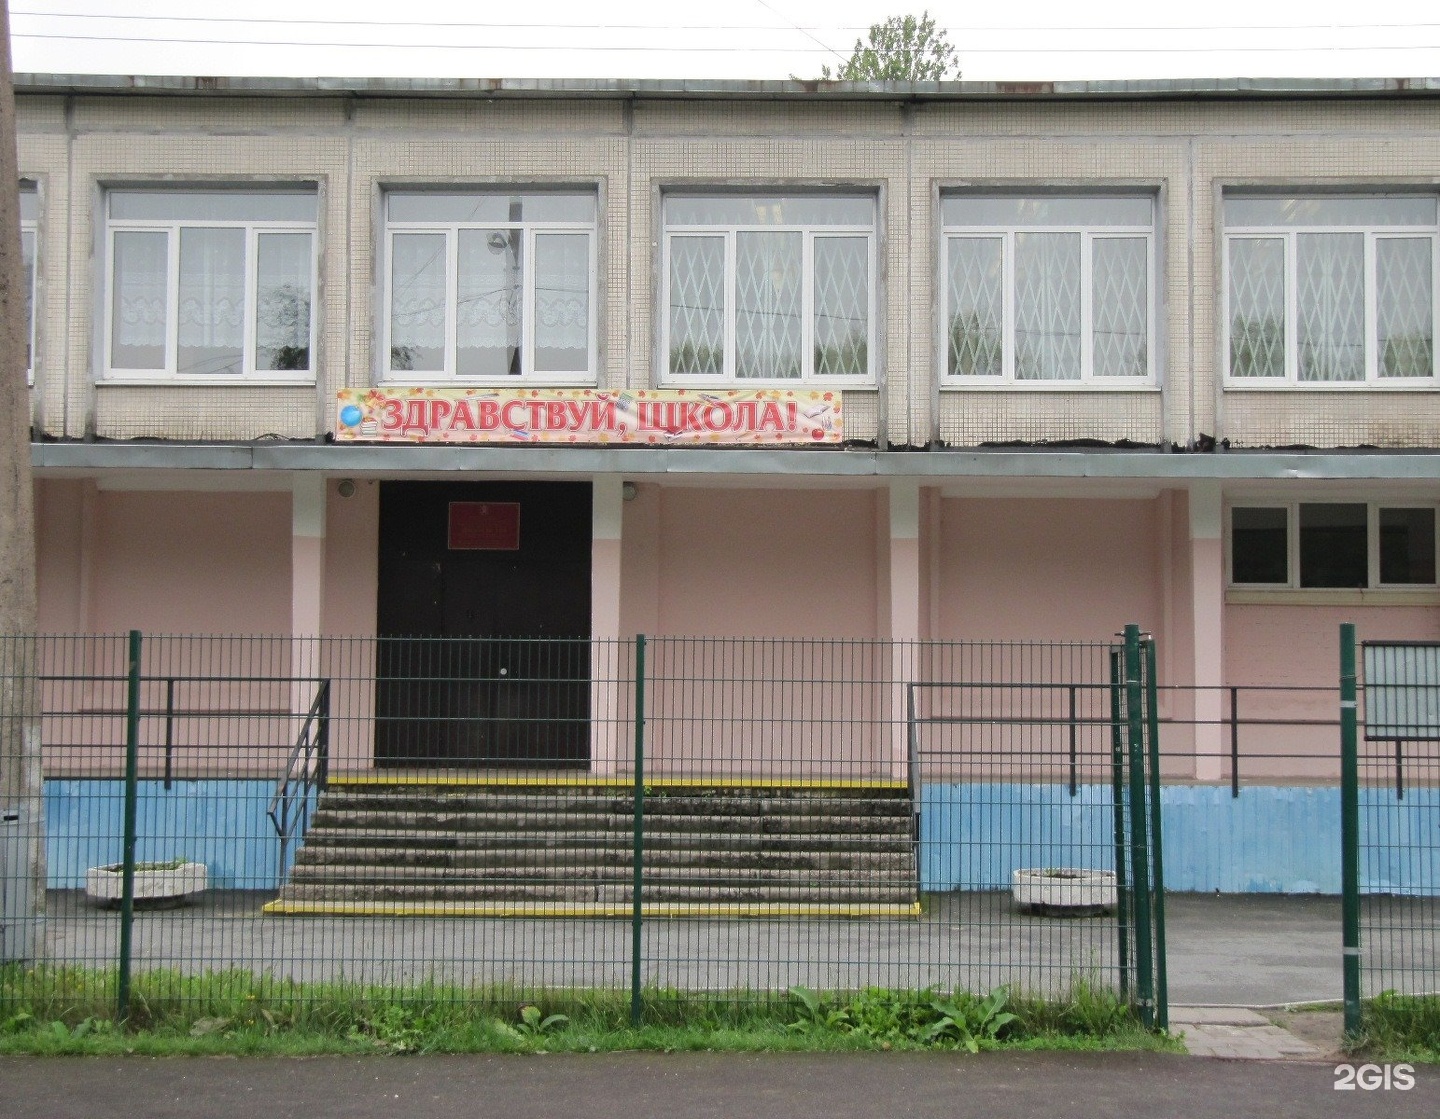 Общеобразовательная школа красногвардейского района